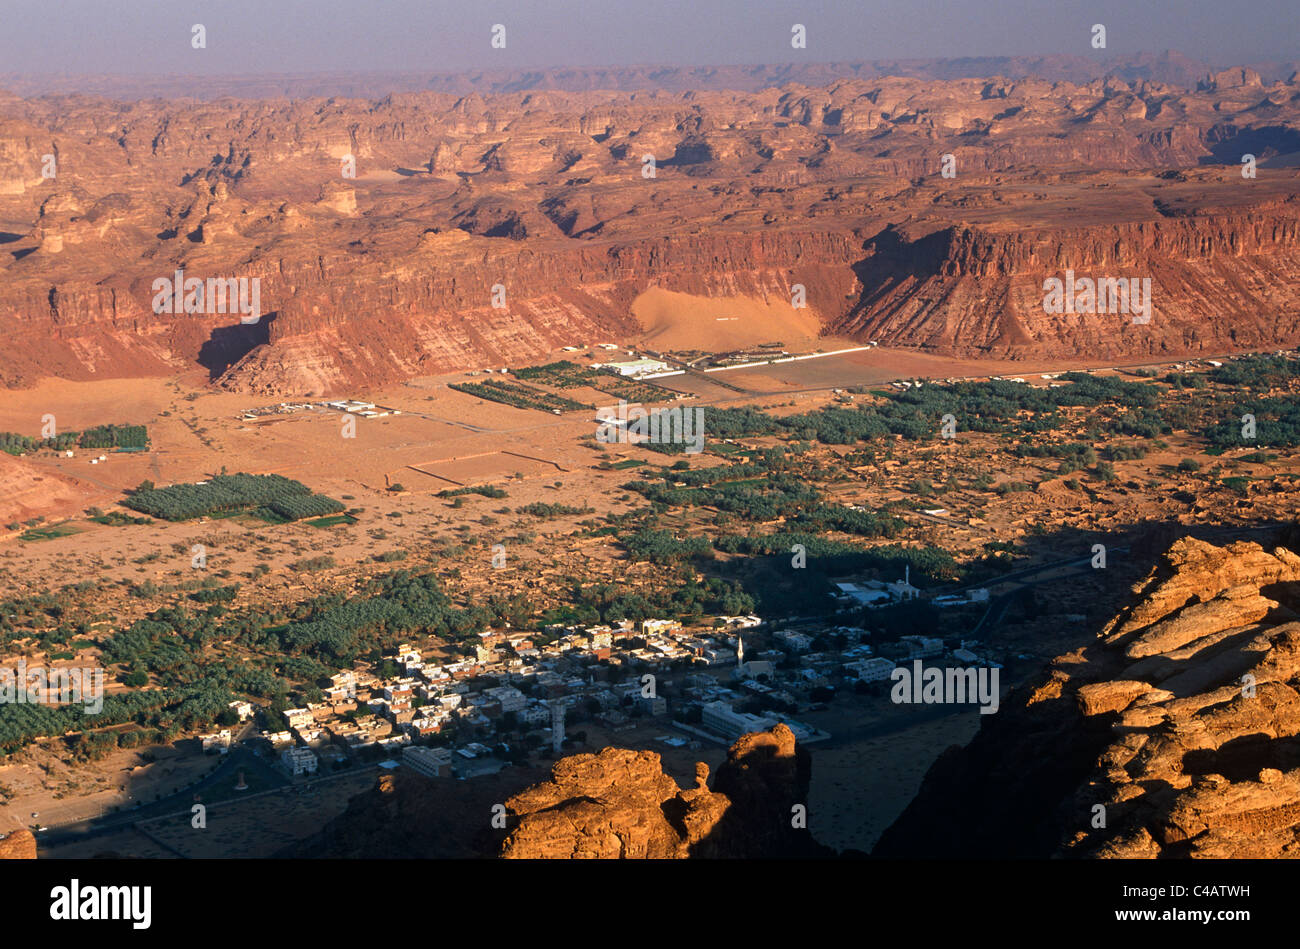 L'Arabie saoudite, Médine, Al-Ula. Une vue sur la ville et oasis de Al-Ula depuis les collines environnantes. Banque D'Images